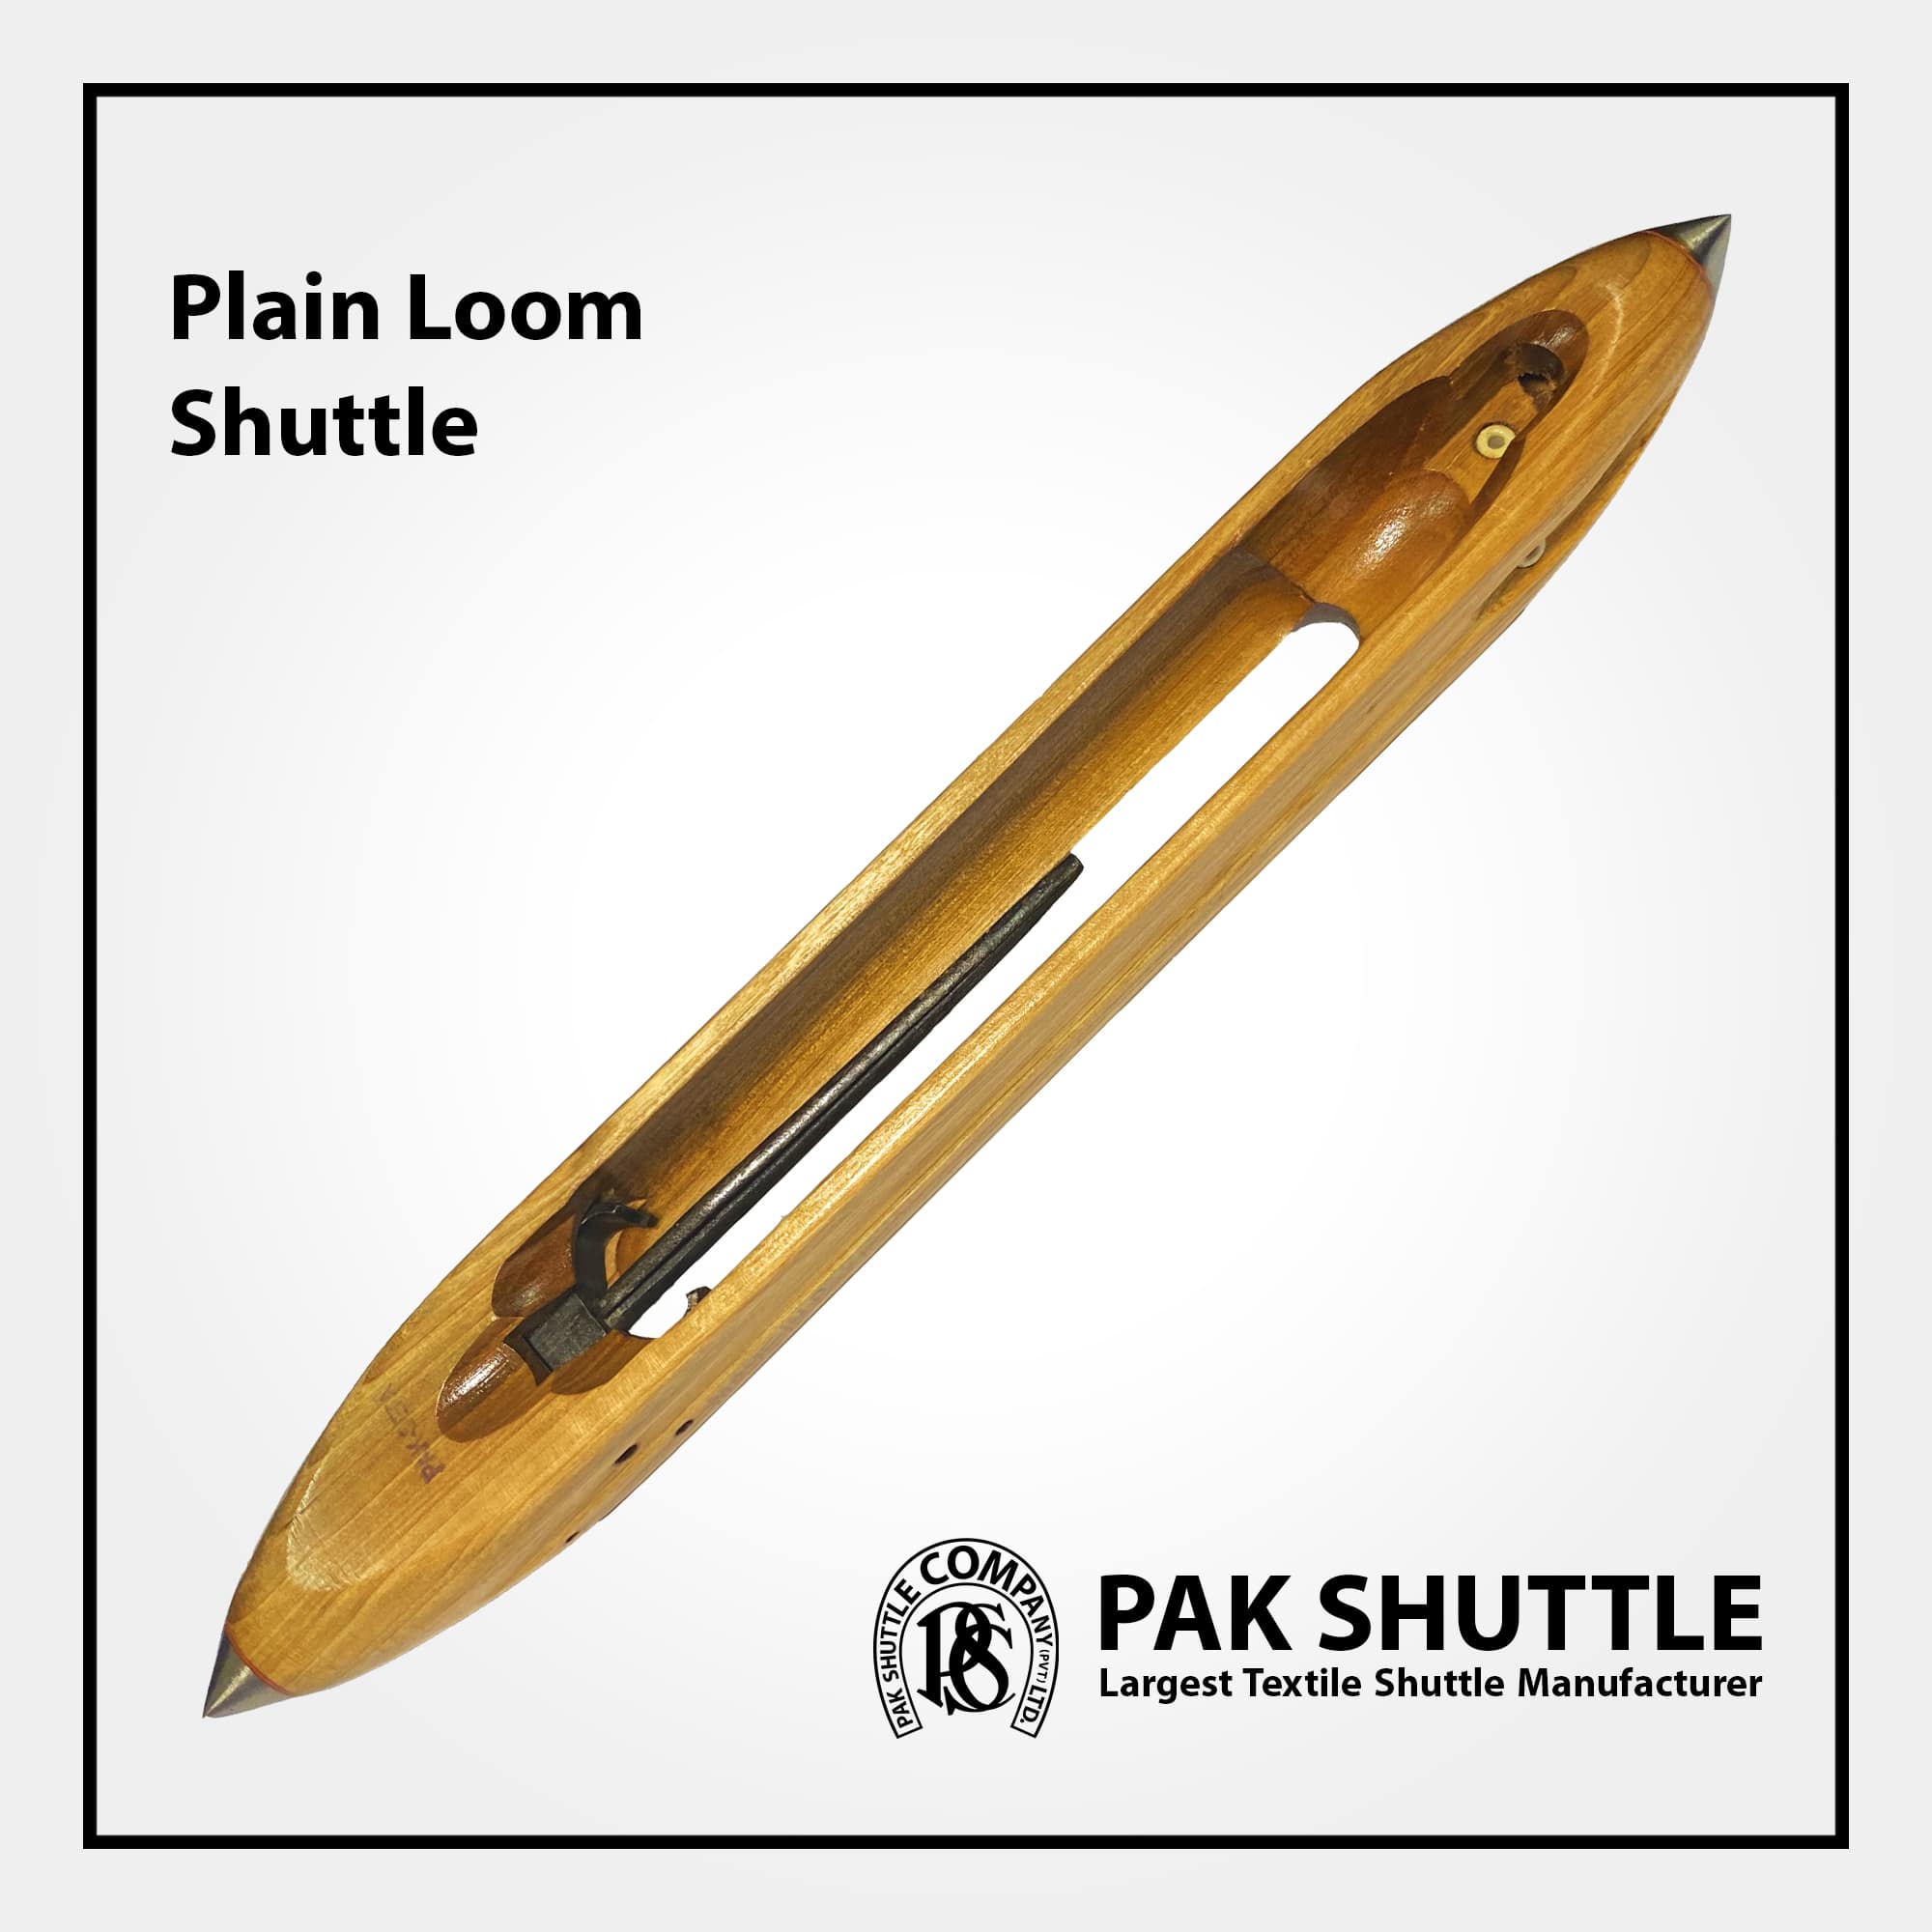 Plain Loom Shuttle by Pak Shuttle Company Pvt Ltd.